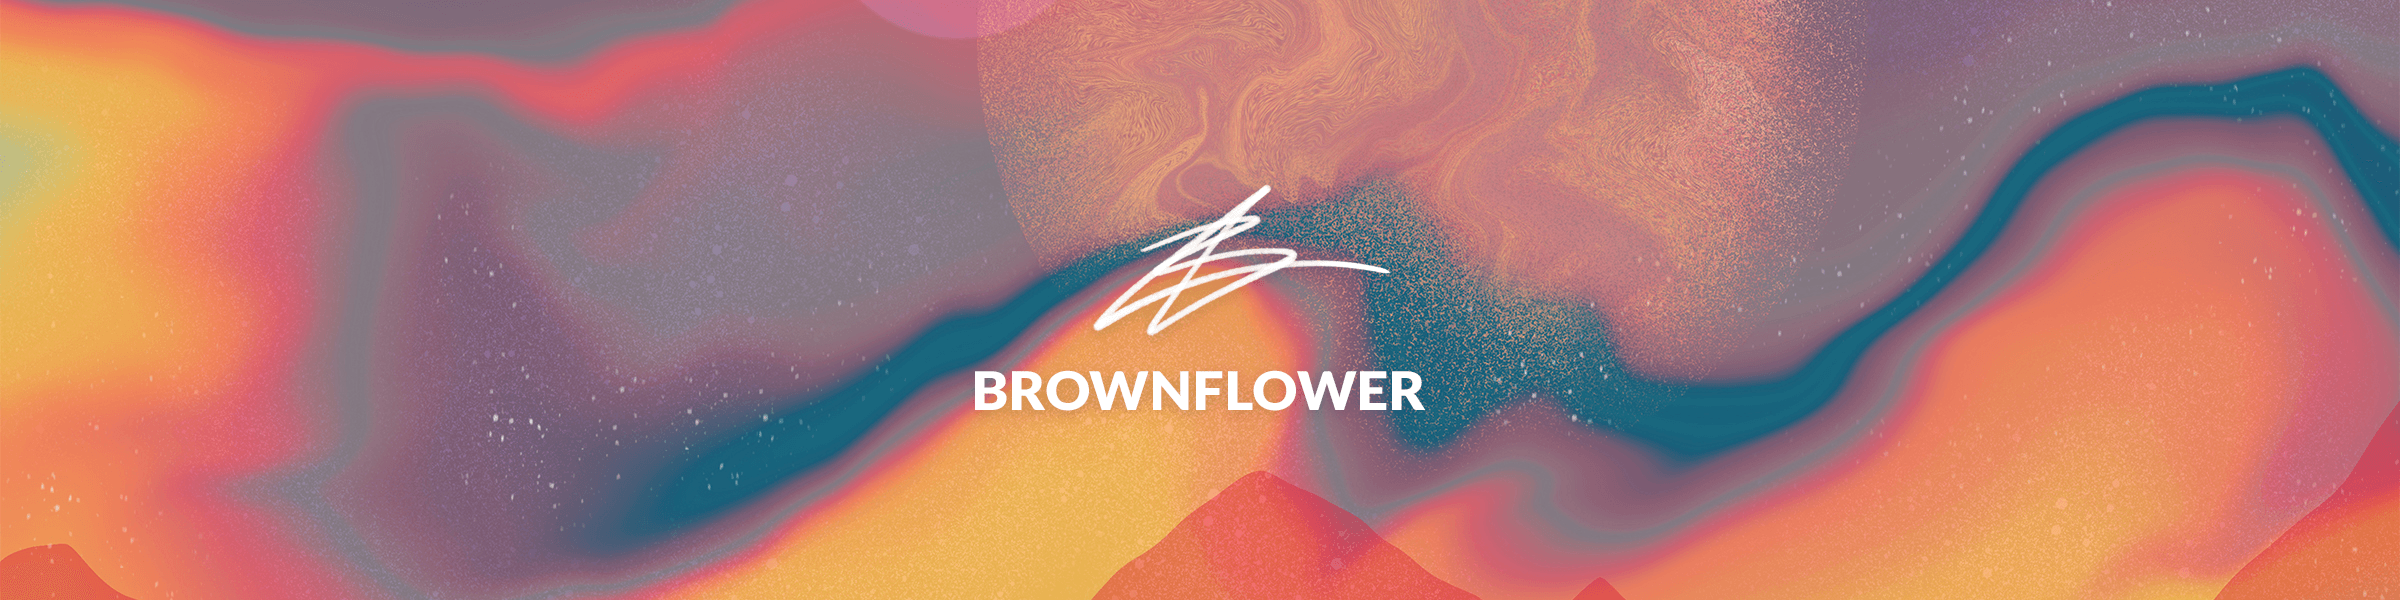 Brownflower banner